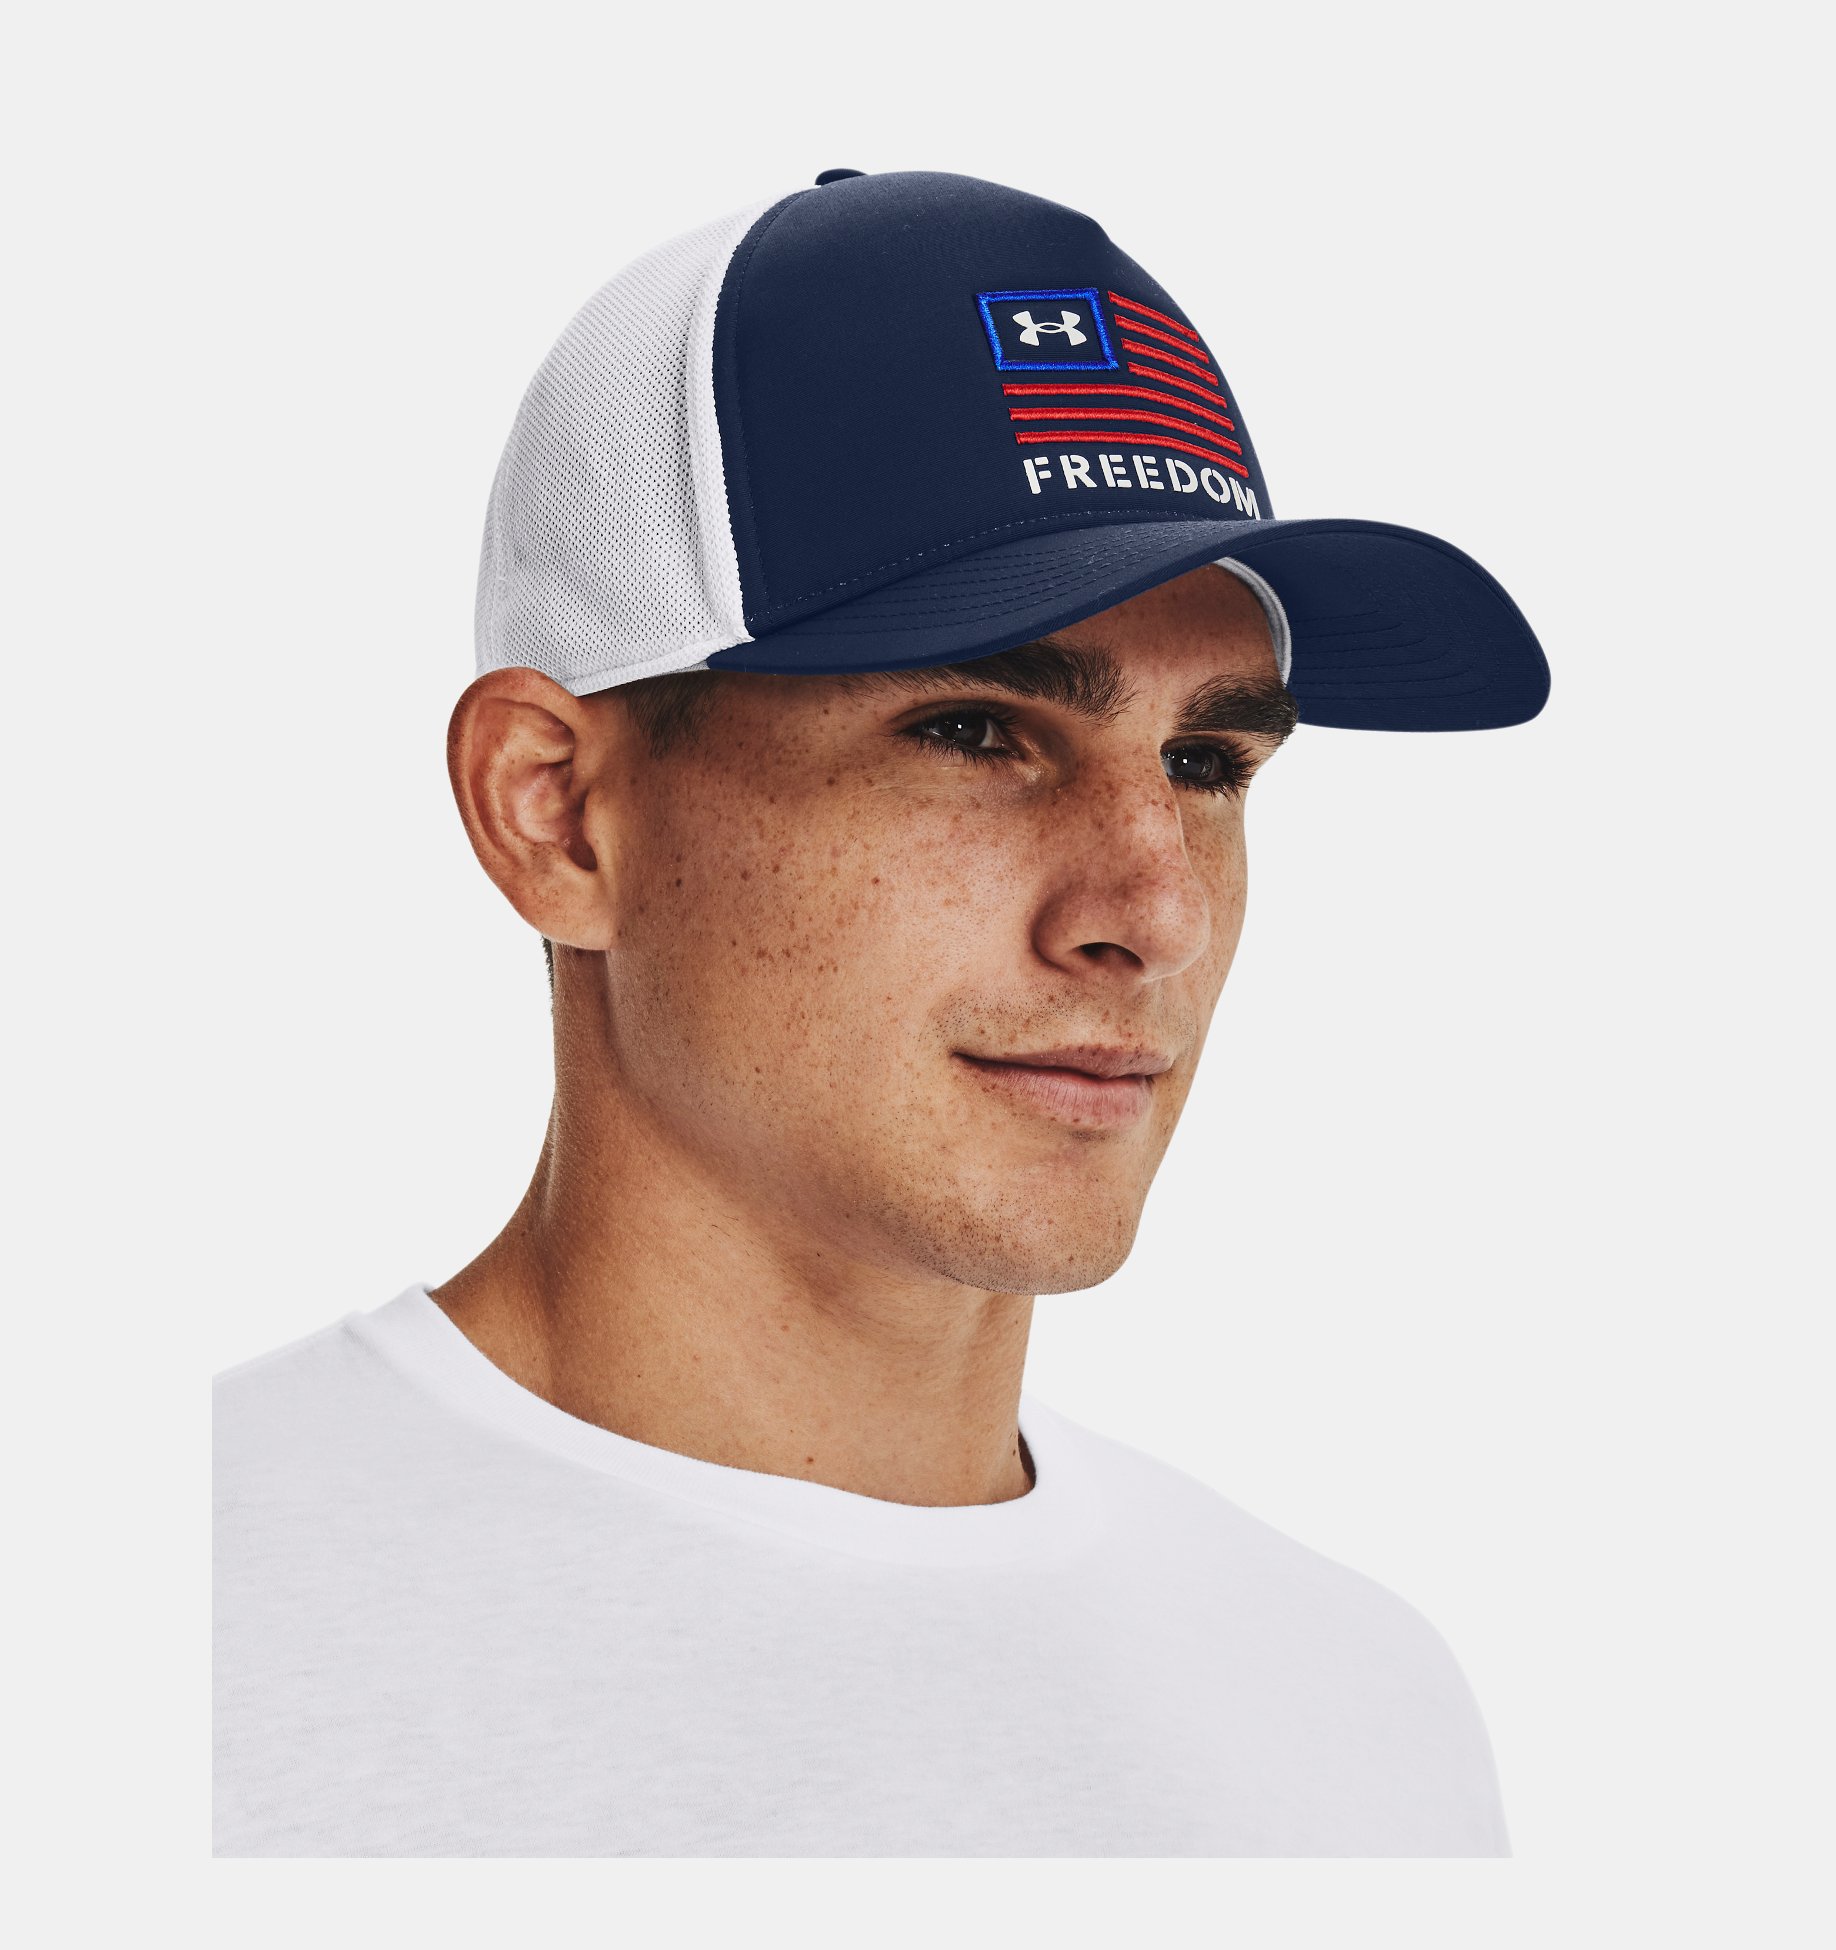 Men's UA Freedom Trucker Cap